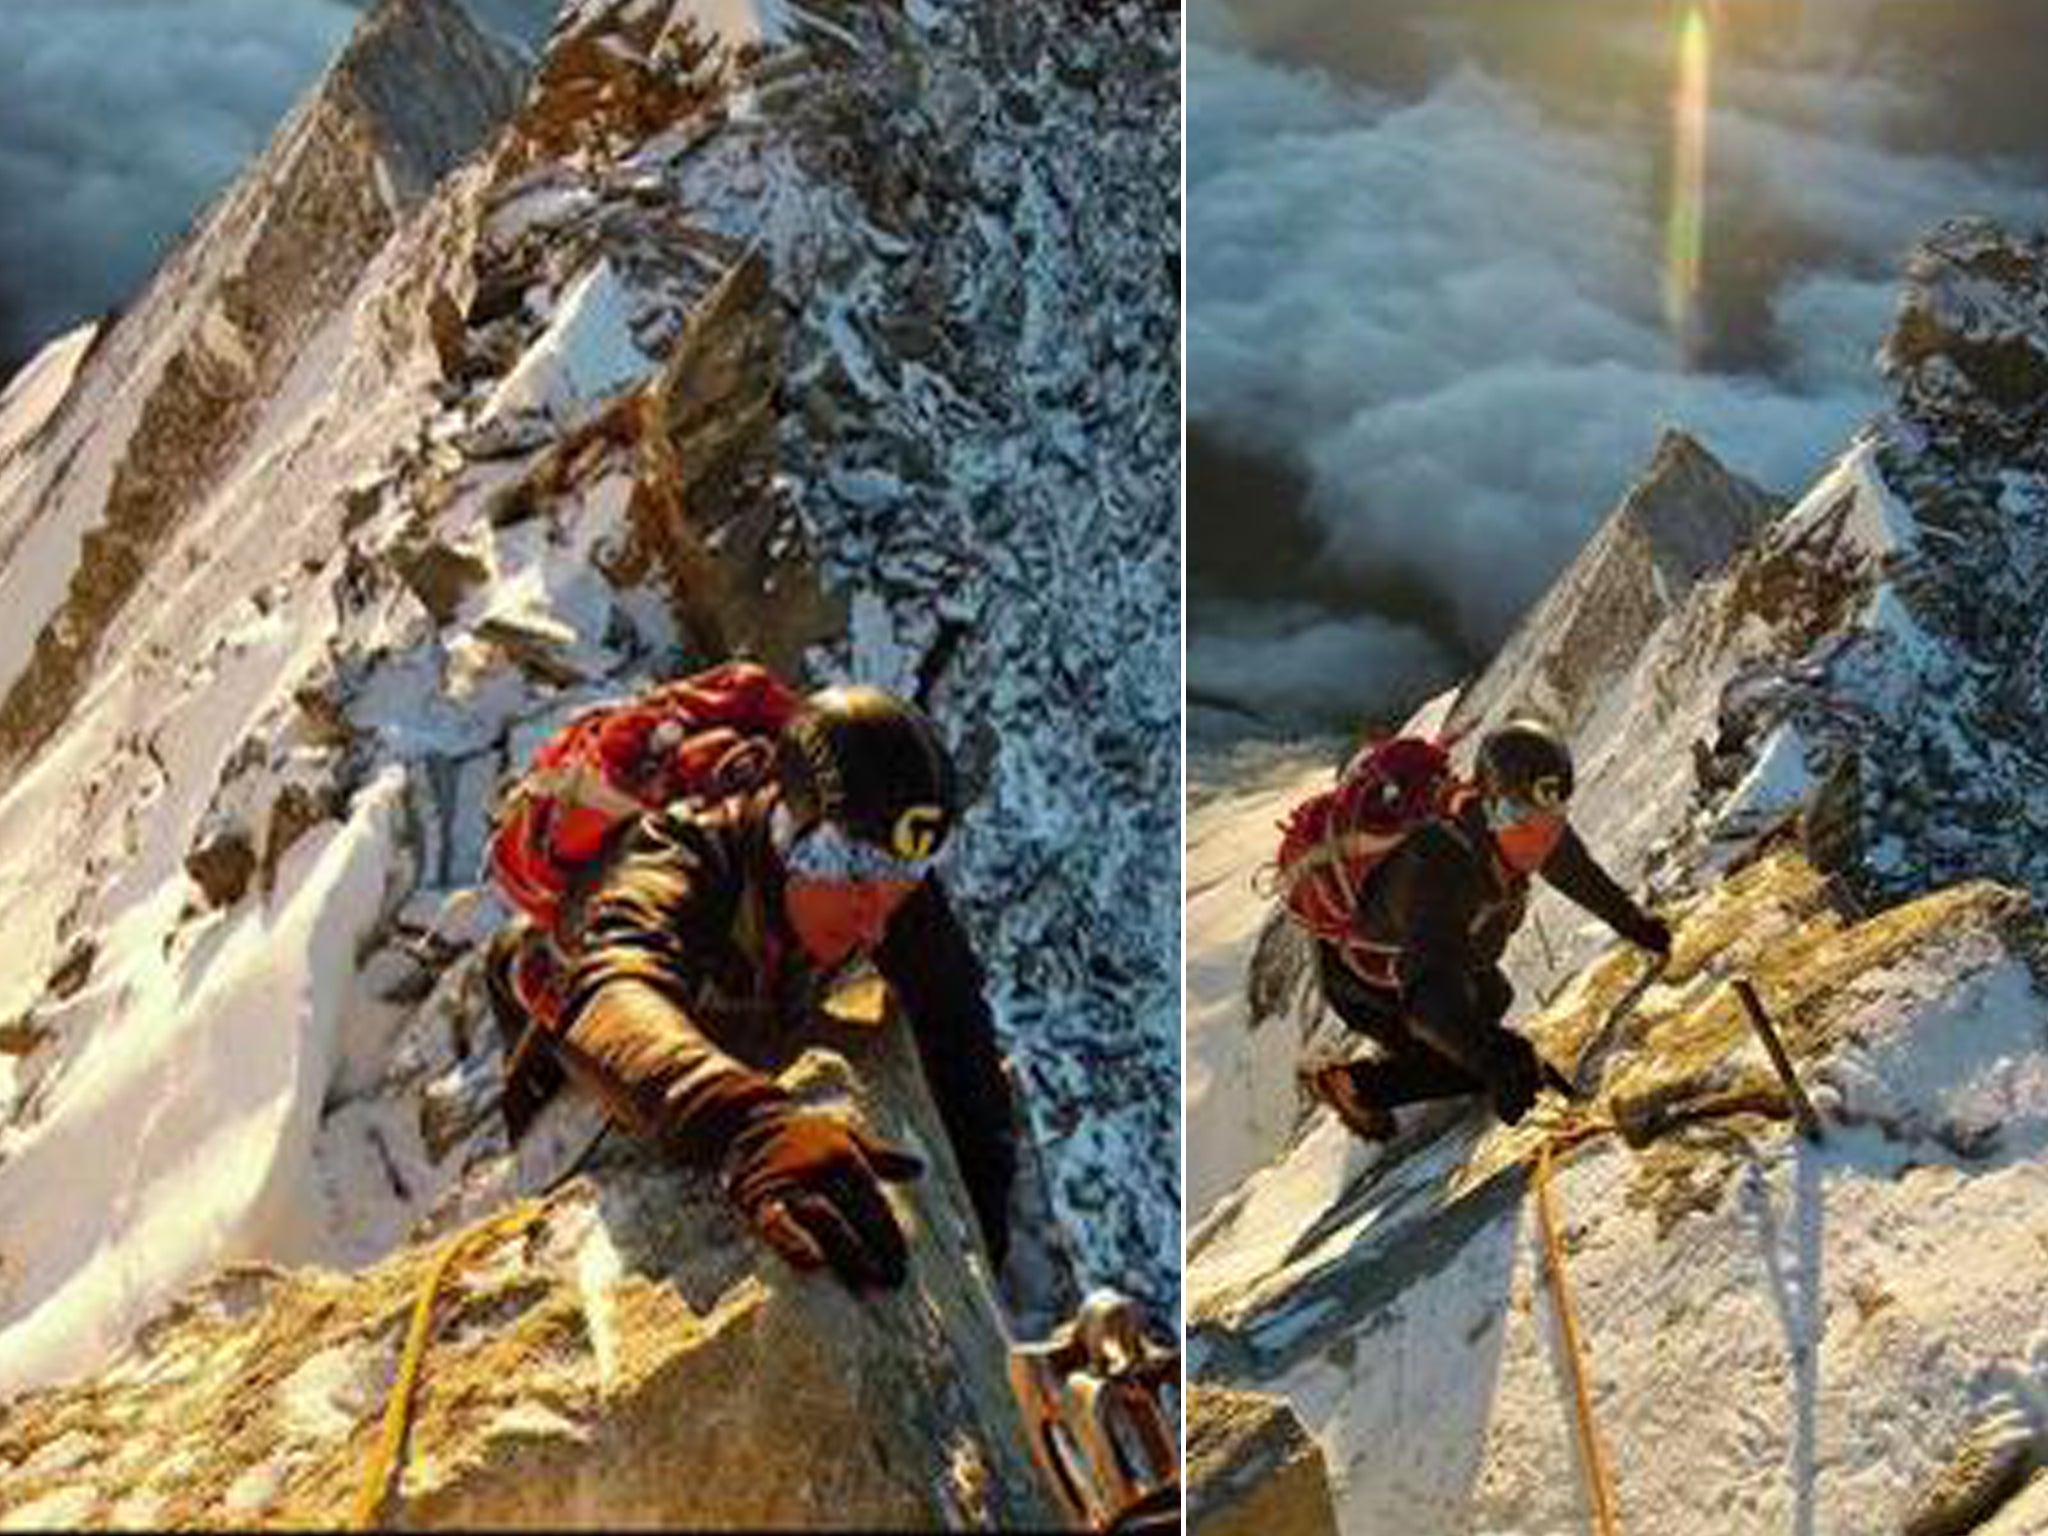 Sands aparece en la foto escalando el Weisshorn, que según los expertos es más exigente que el Matterhorn.